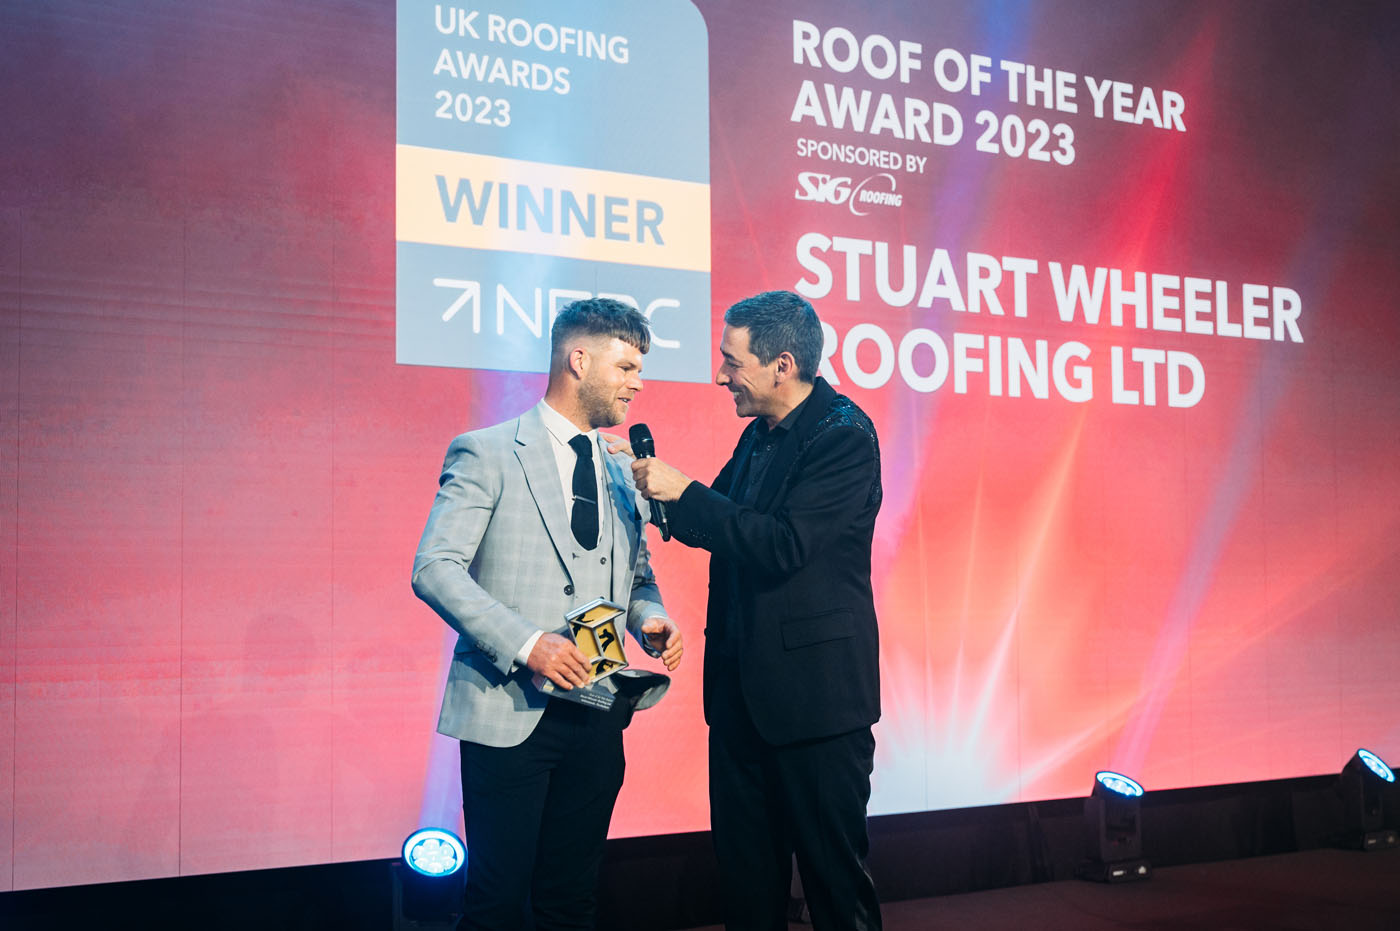 Roof of the Year winner Stuart Wheeler Roofing